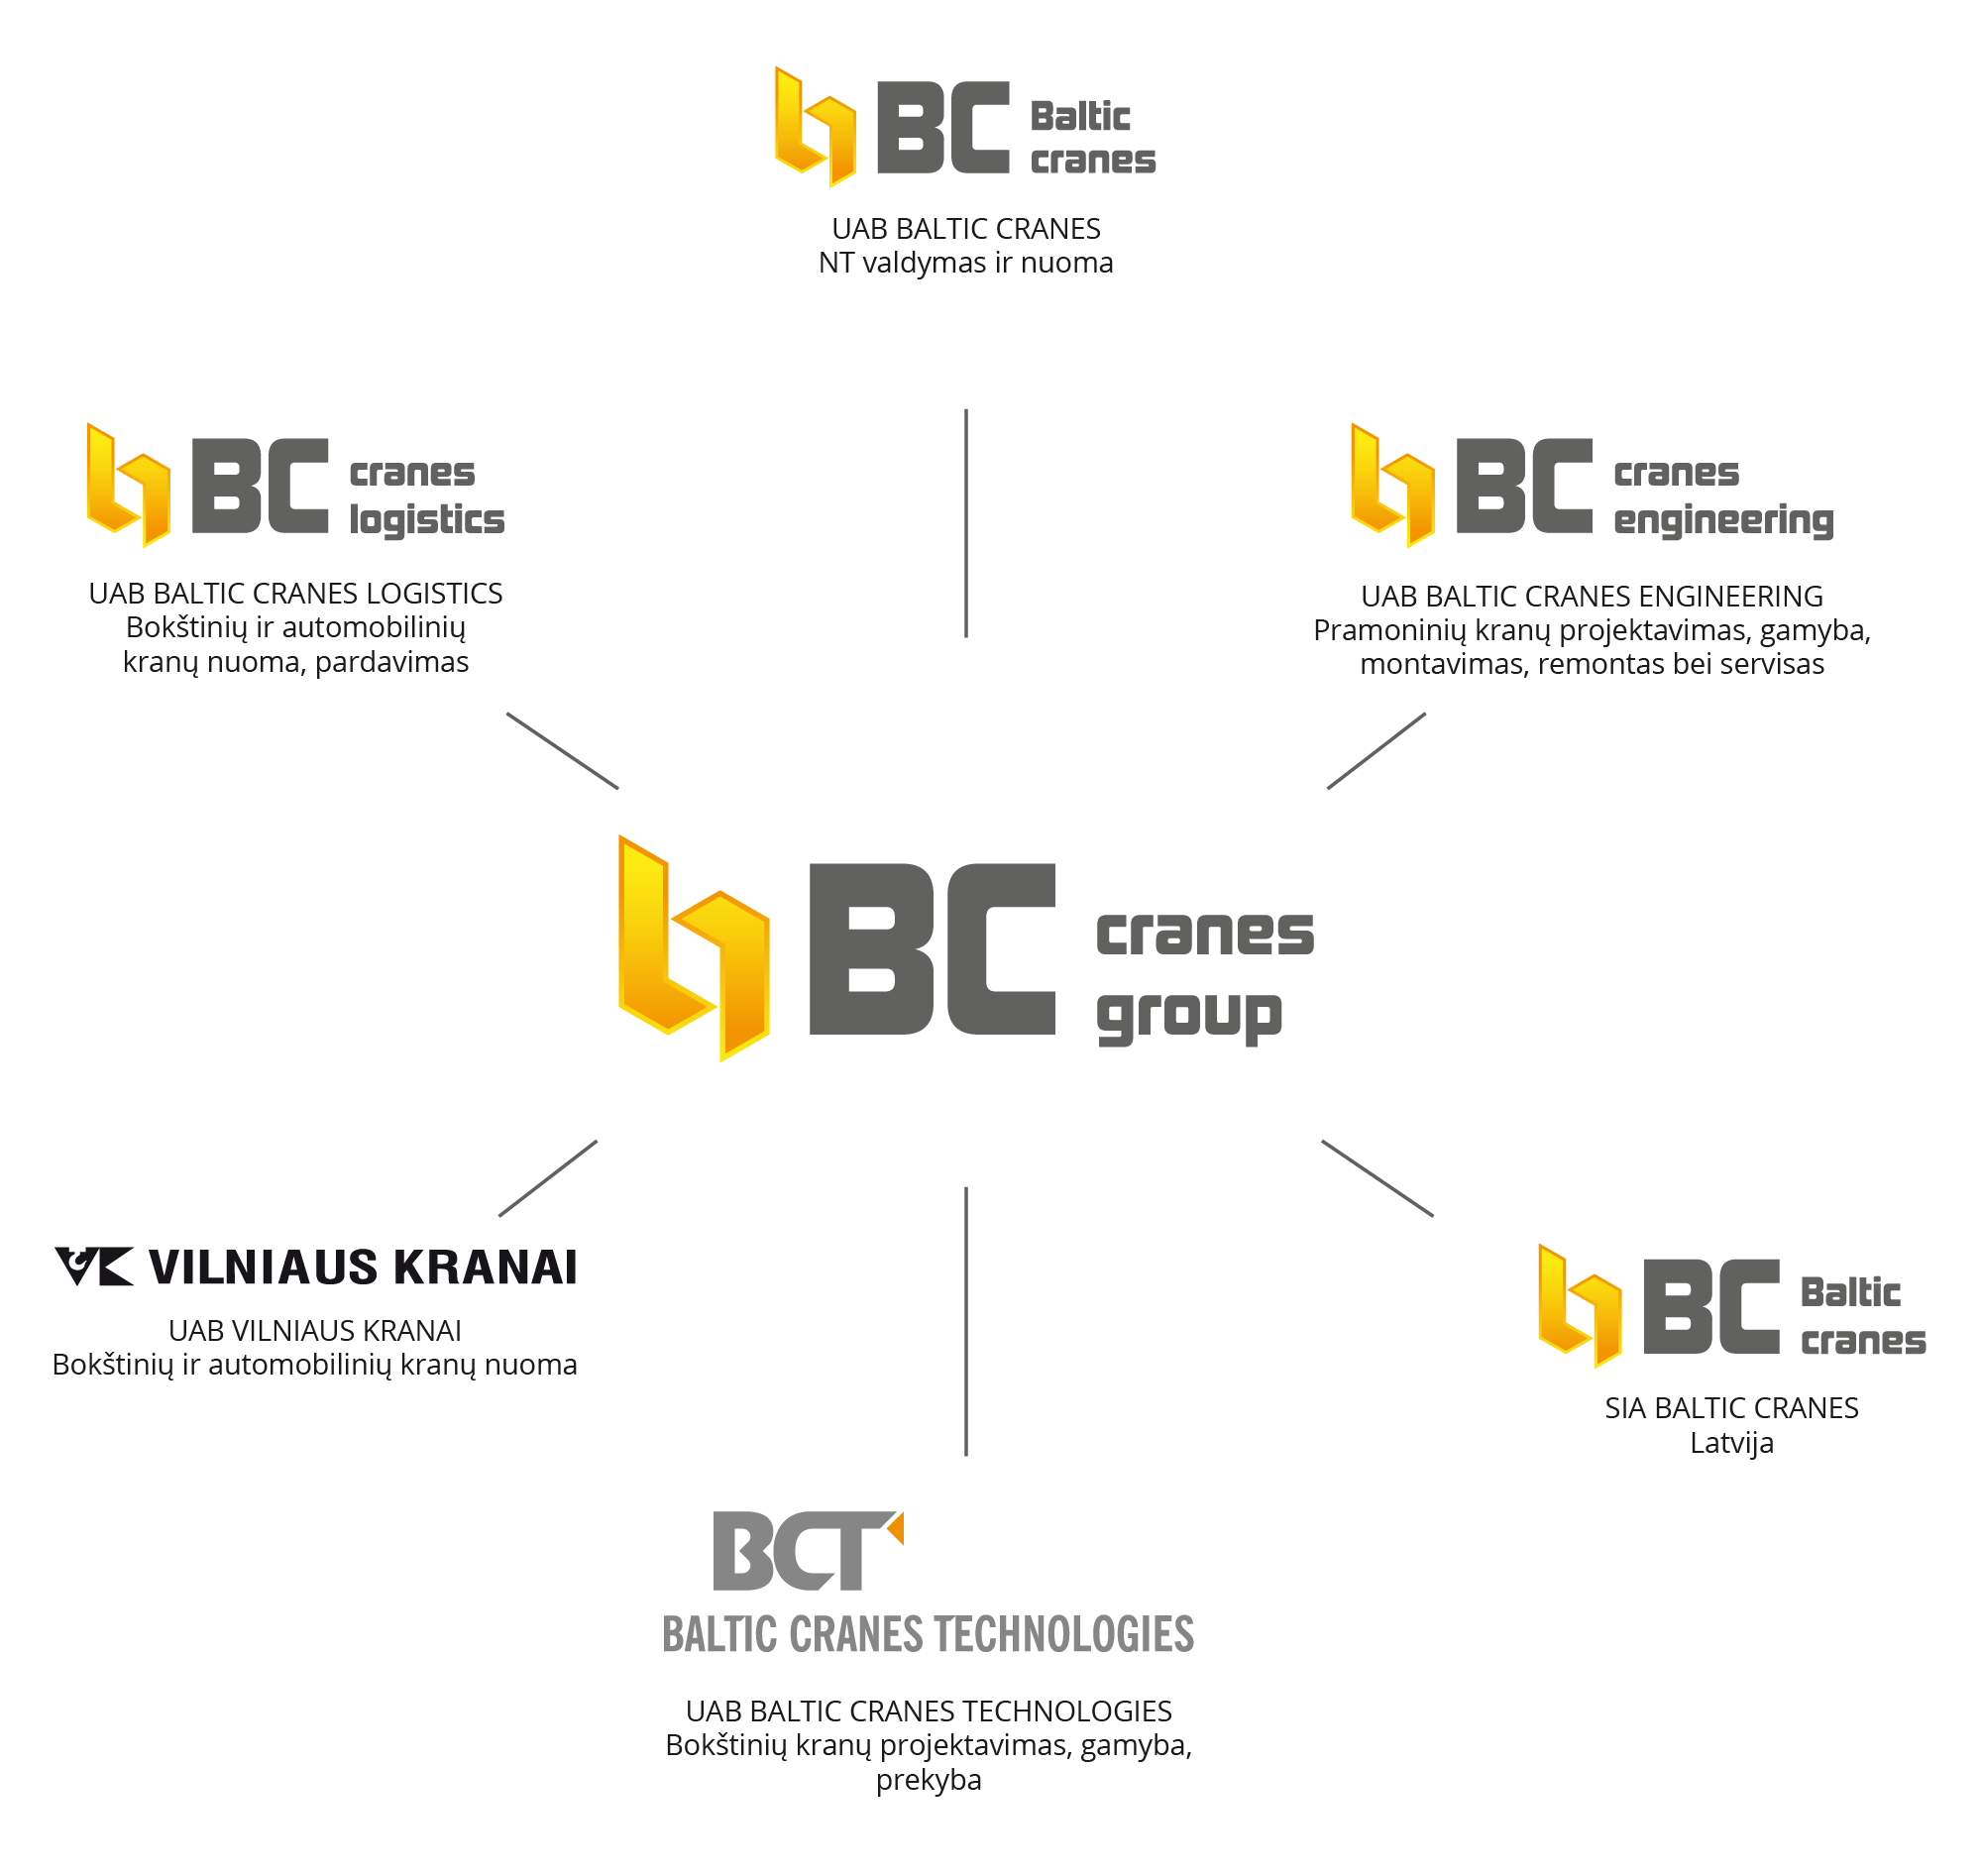 BC Cranes Group